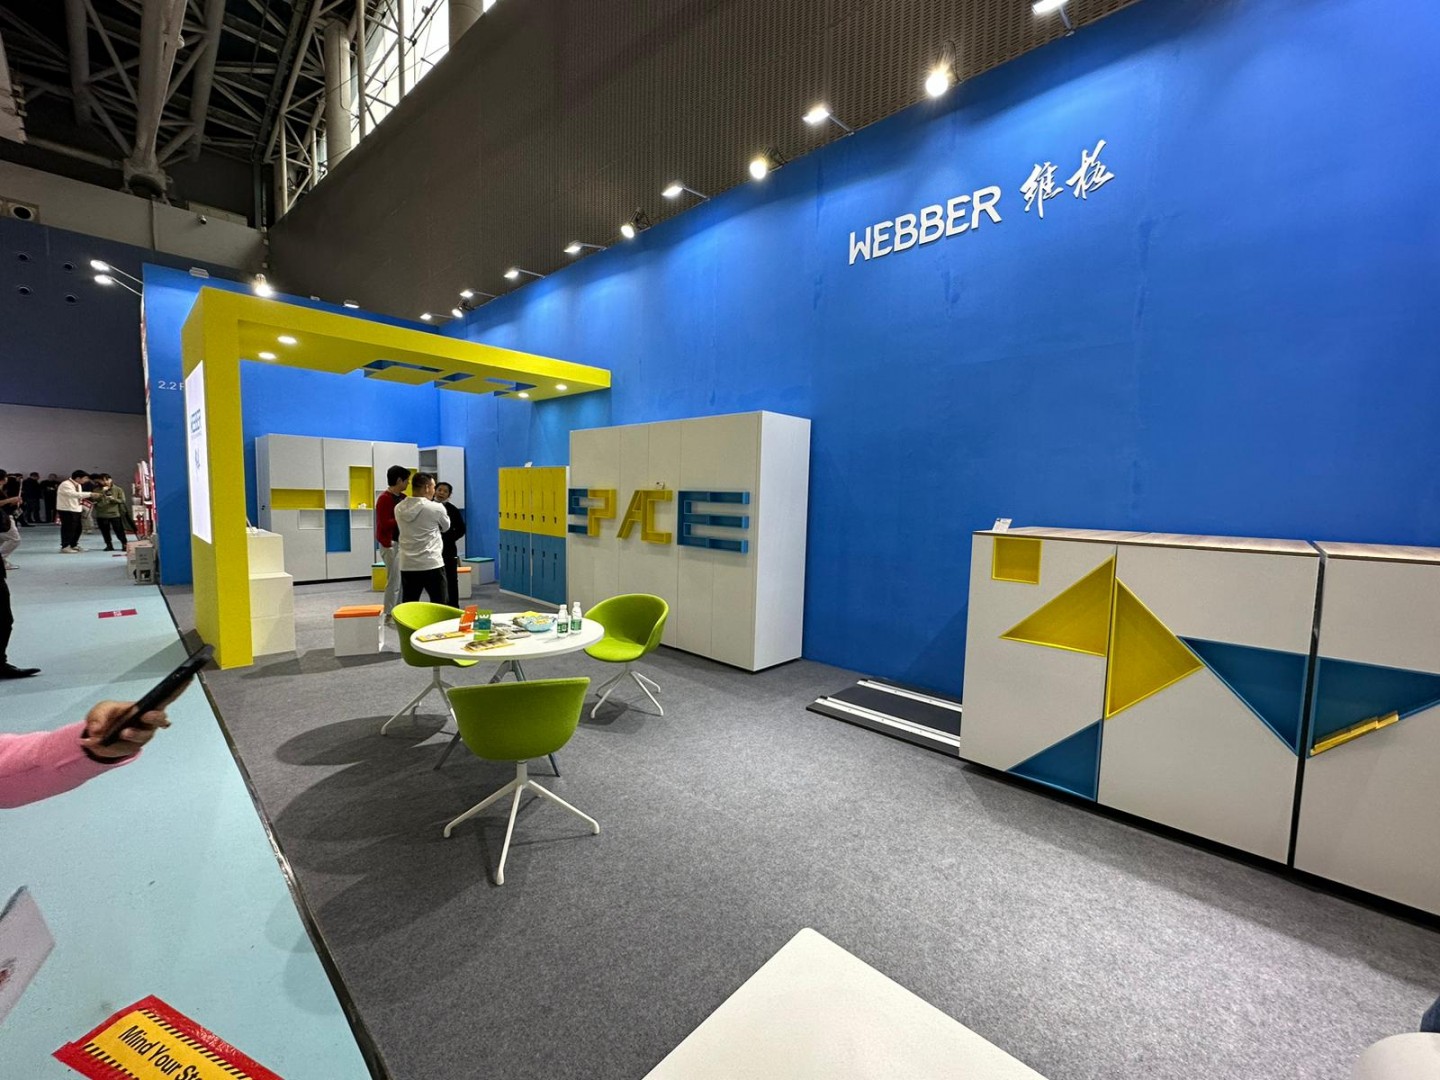 WEBBER's Successful Participation in the 51st China International Furniture Fair (Guangzhou) - A Recap